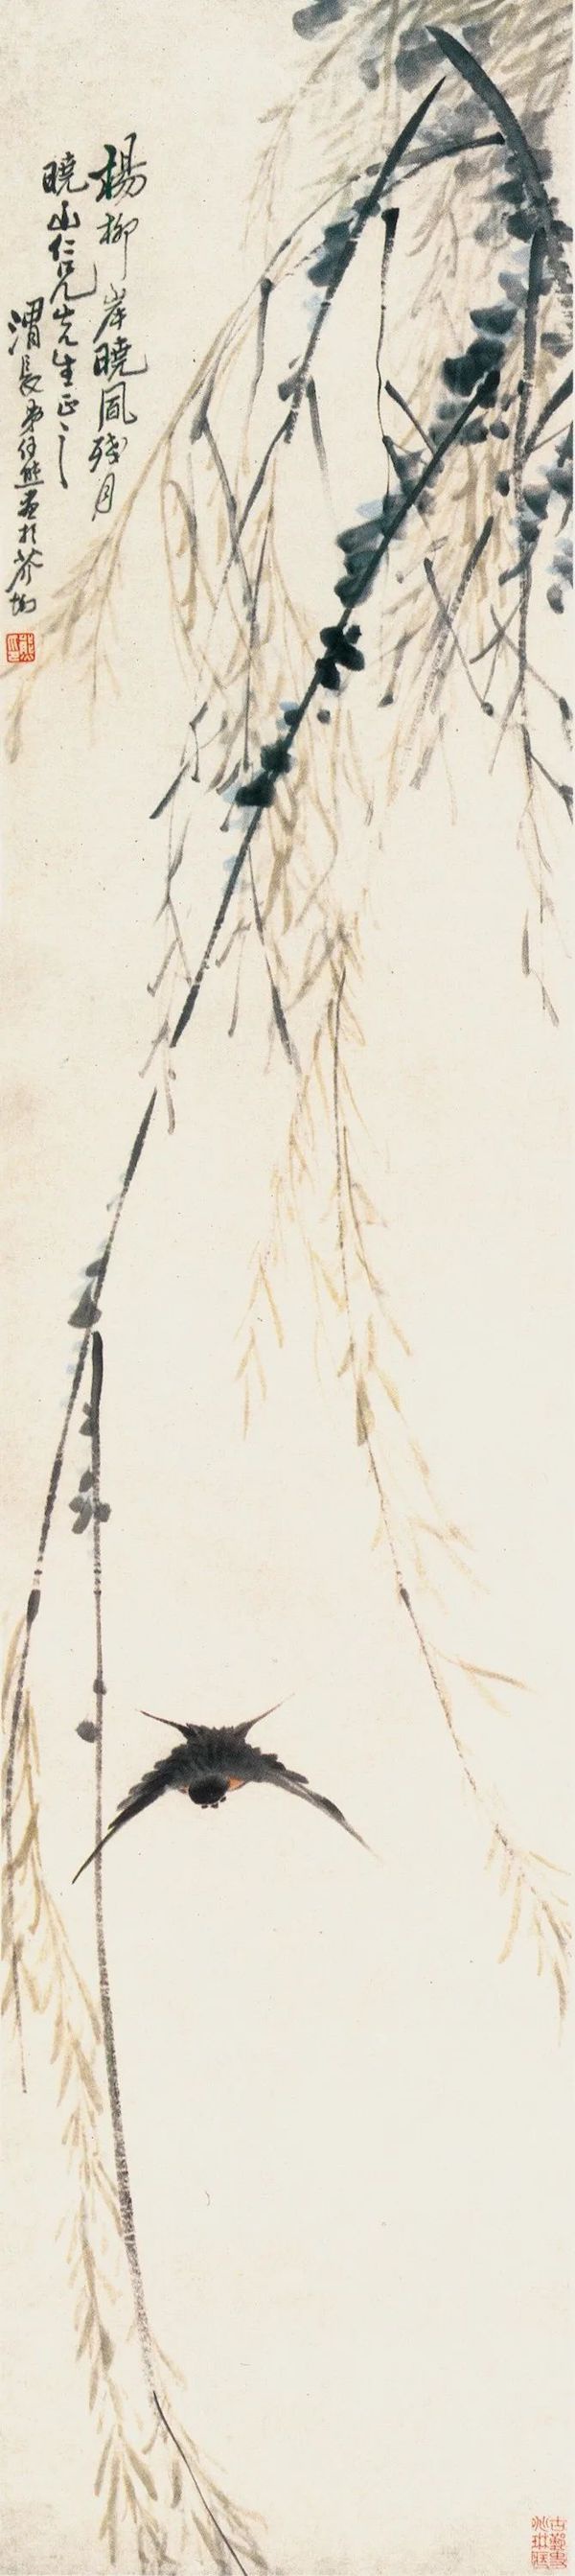 柳燕 清 任渭长 轴 纸本设色 134.5cm×30.2cm 天津博物馆藏